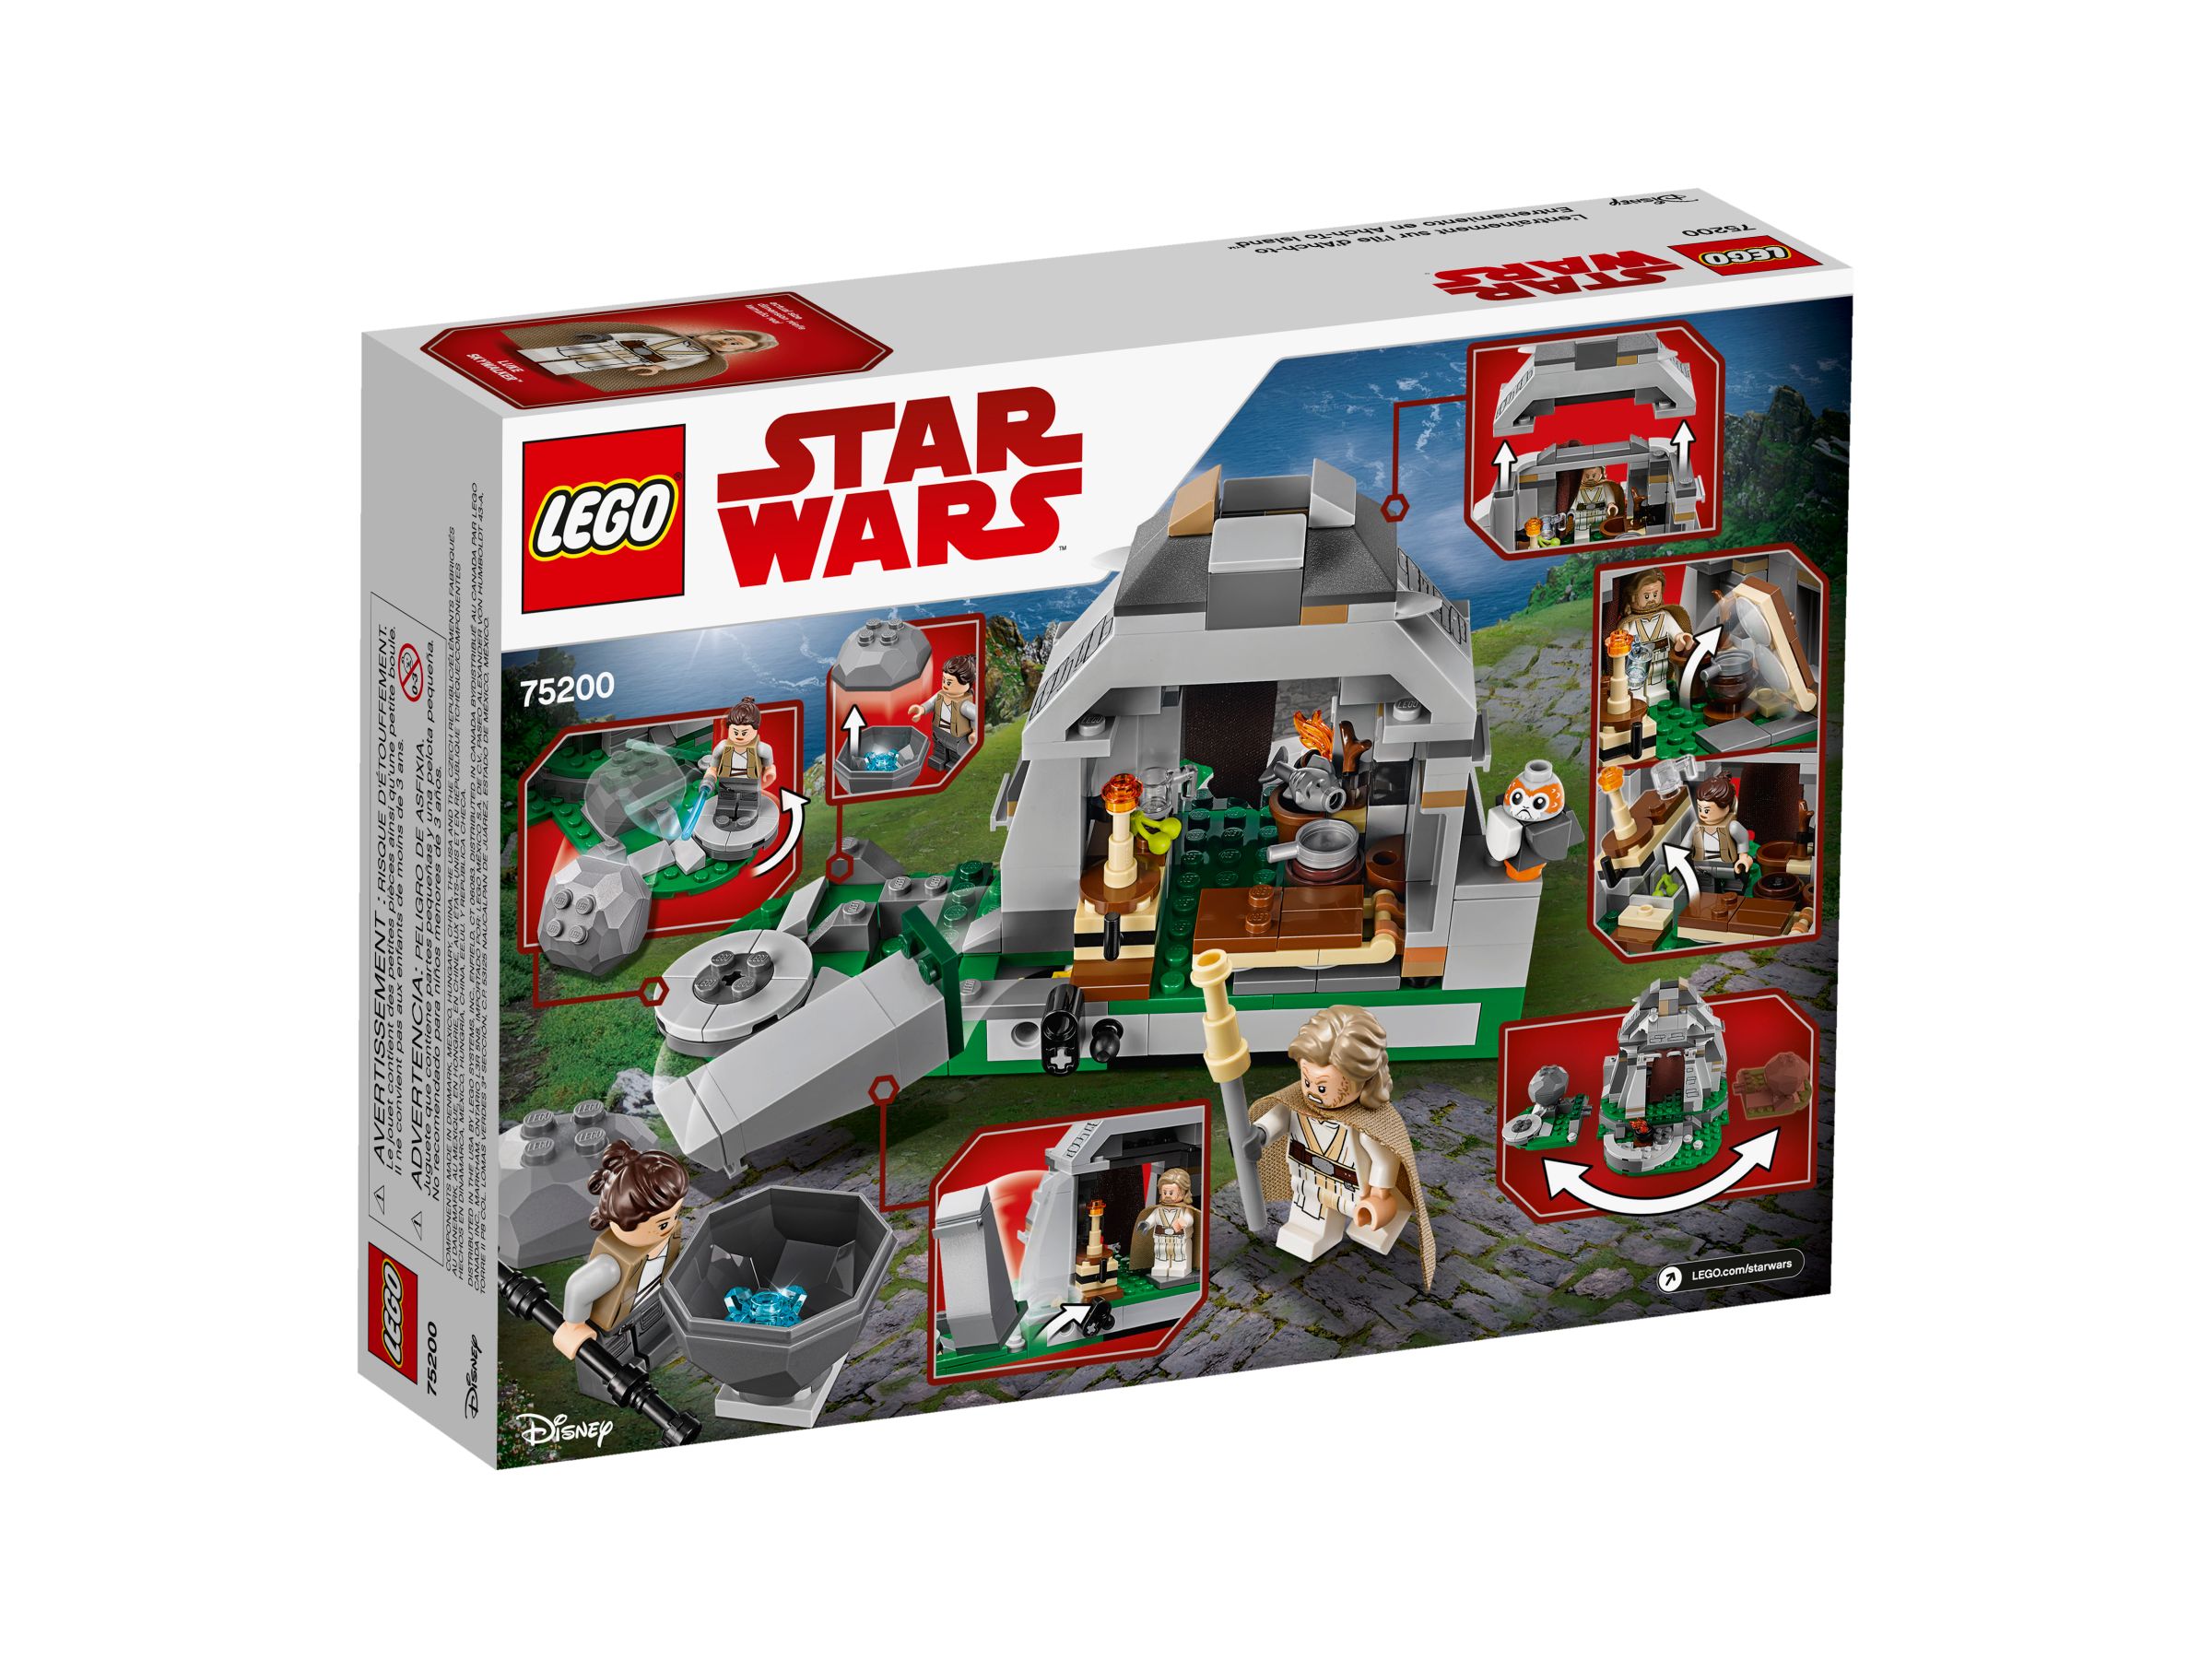 LEGO Star Wars 75200 Ahch-To Island™ Training LEGO_75200_alt2.jpg